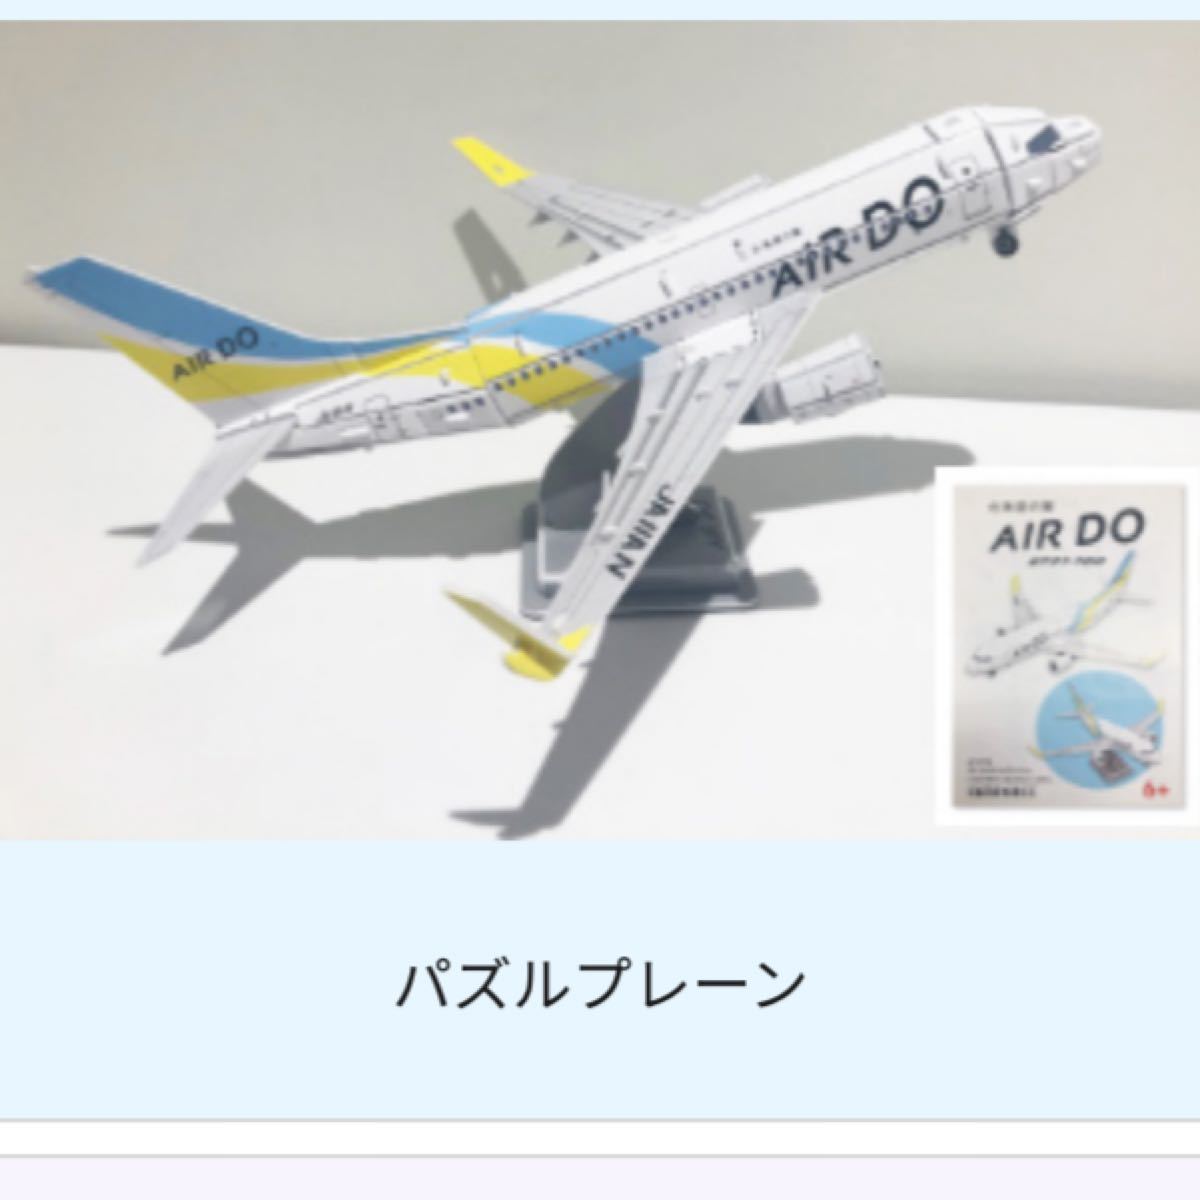 最新発見 【未使用】AIRDO BOEING737-500 モデルプレーン 模型 航空機